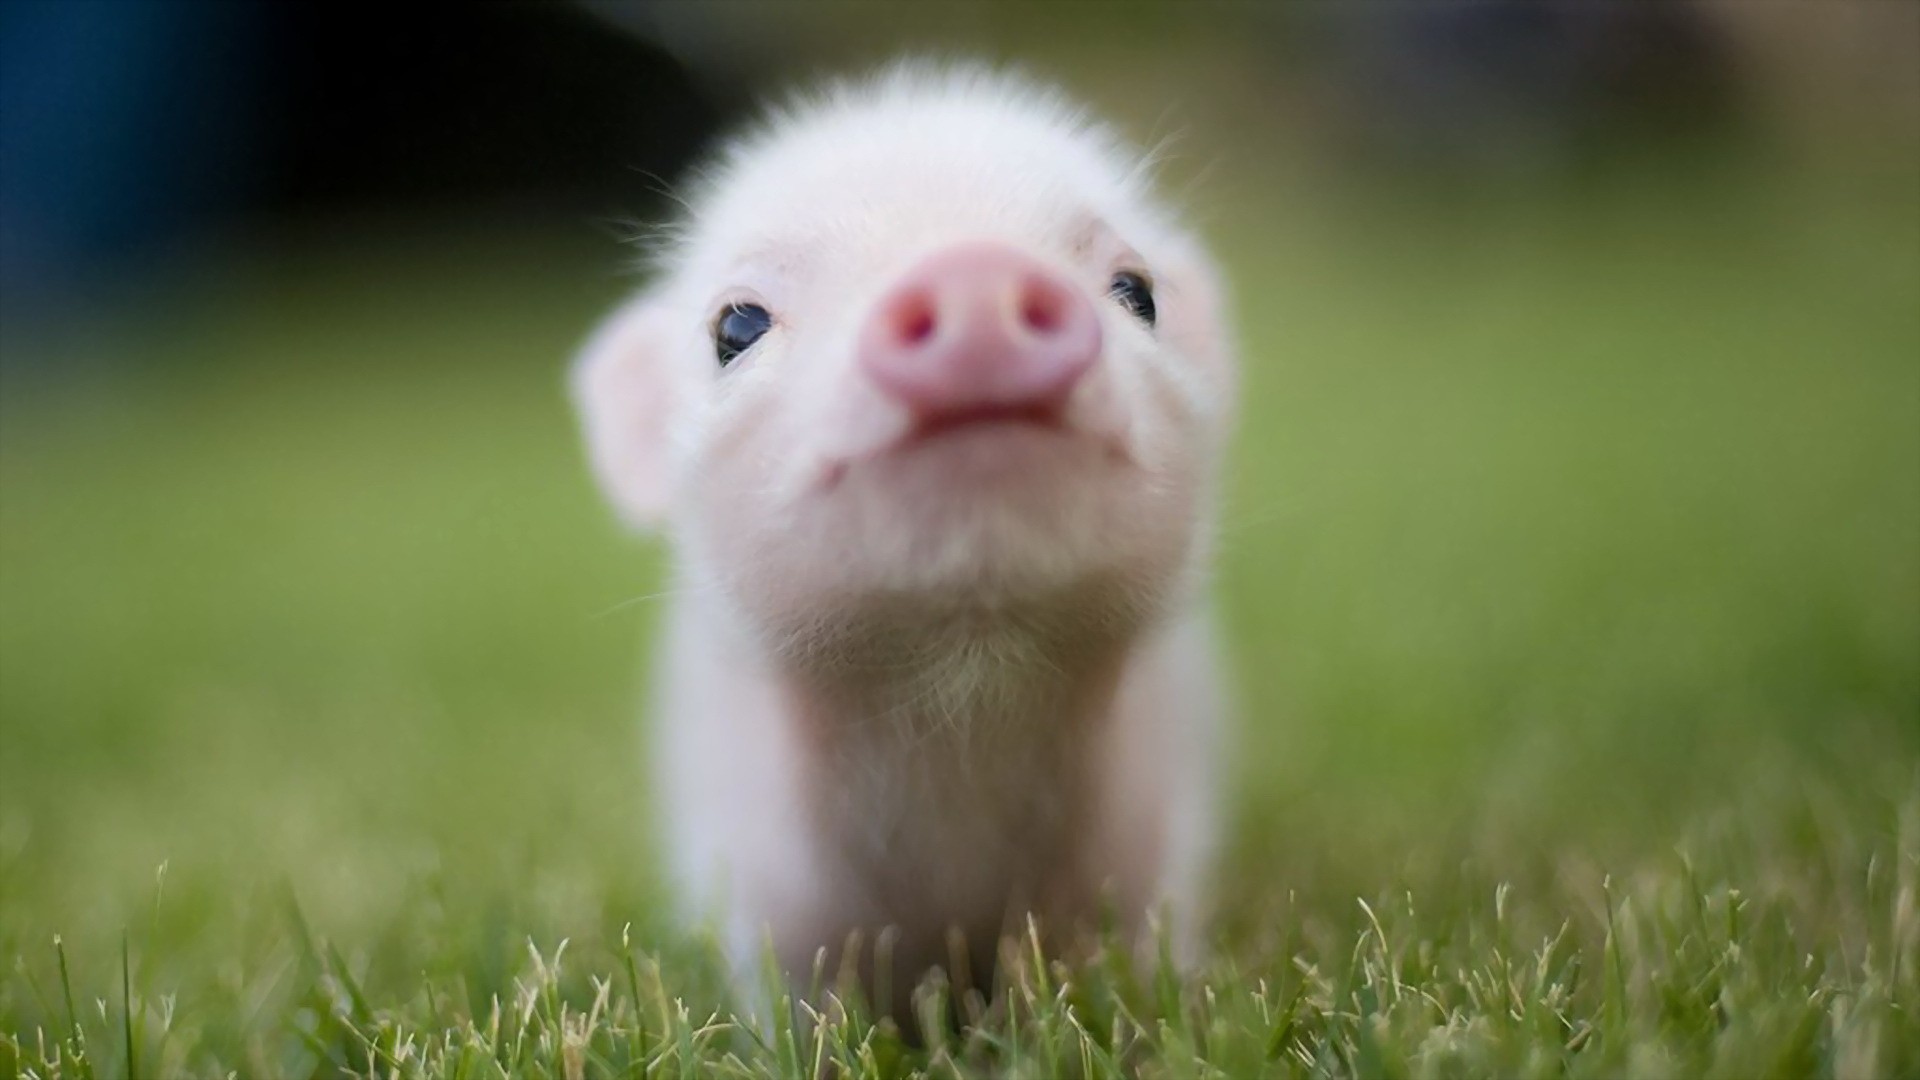 animals, grass, pigs, piglets - desktop wallpaper